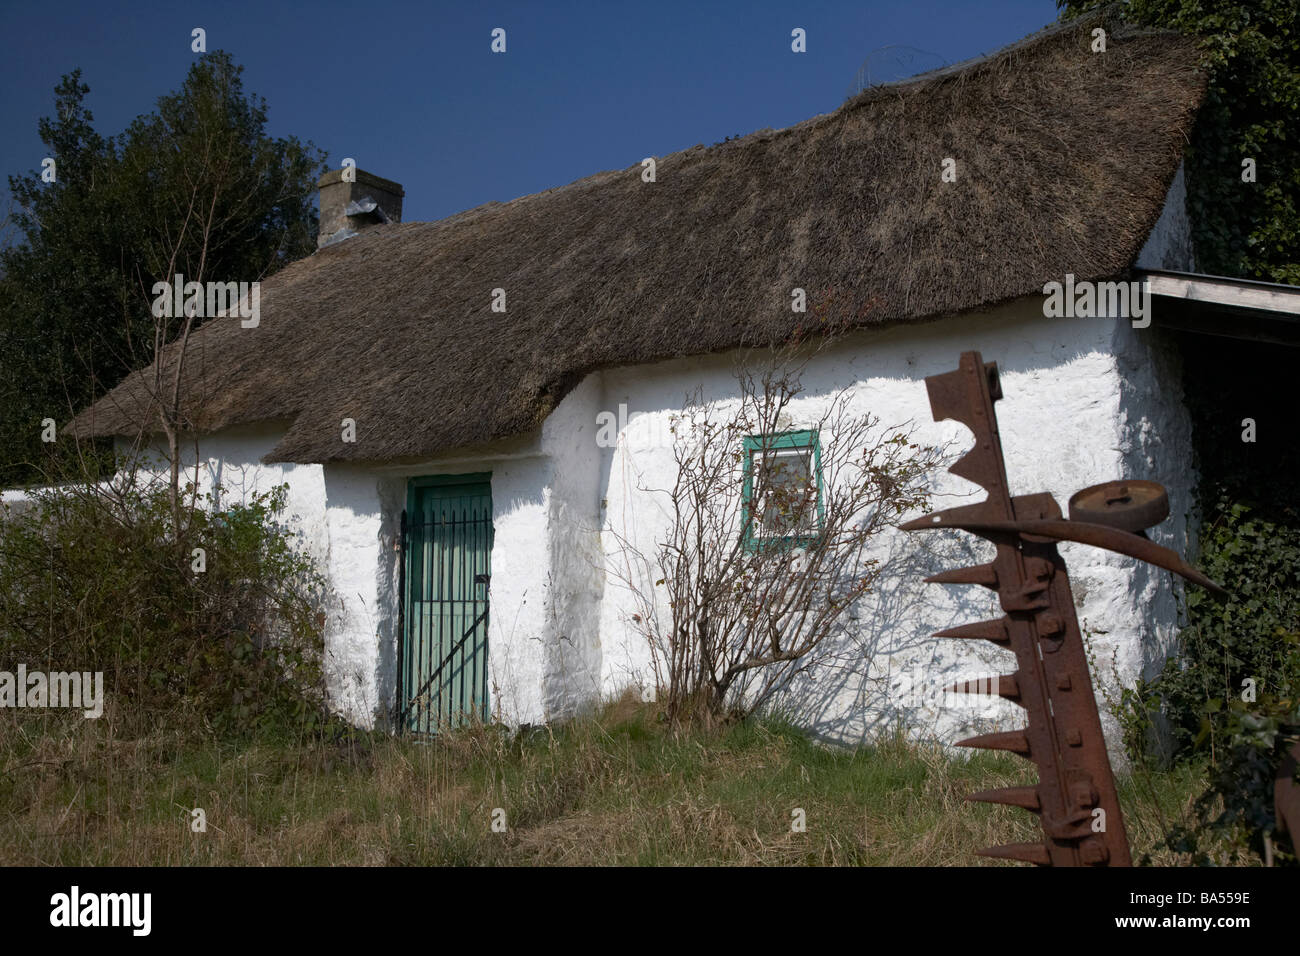 kleinen weiß getünchten traditionellen irischen Landwirtschaft strohgedeckten Hütte South Armagh Nordirland Vereinigtes Königreich Stockfoto